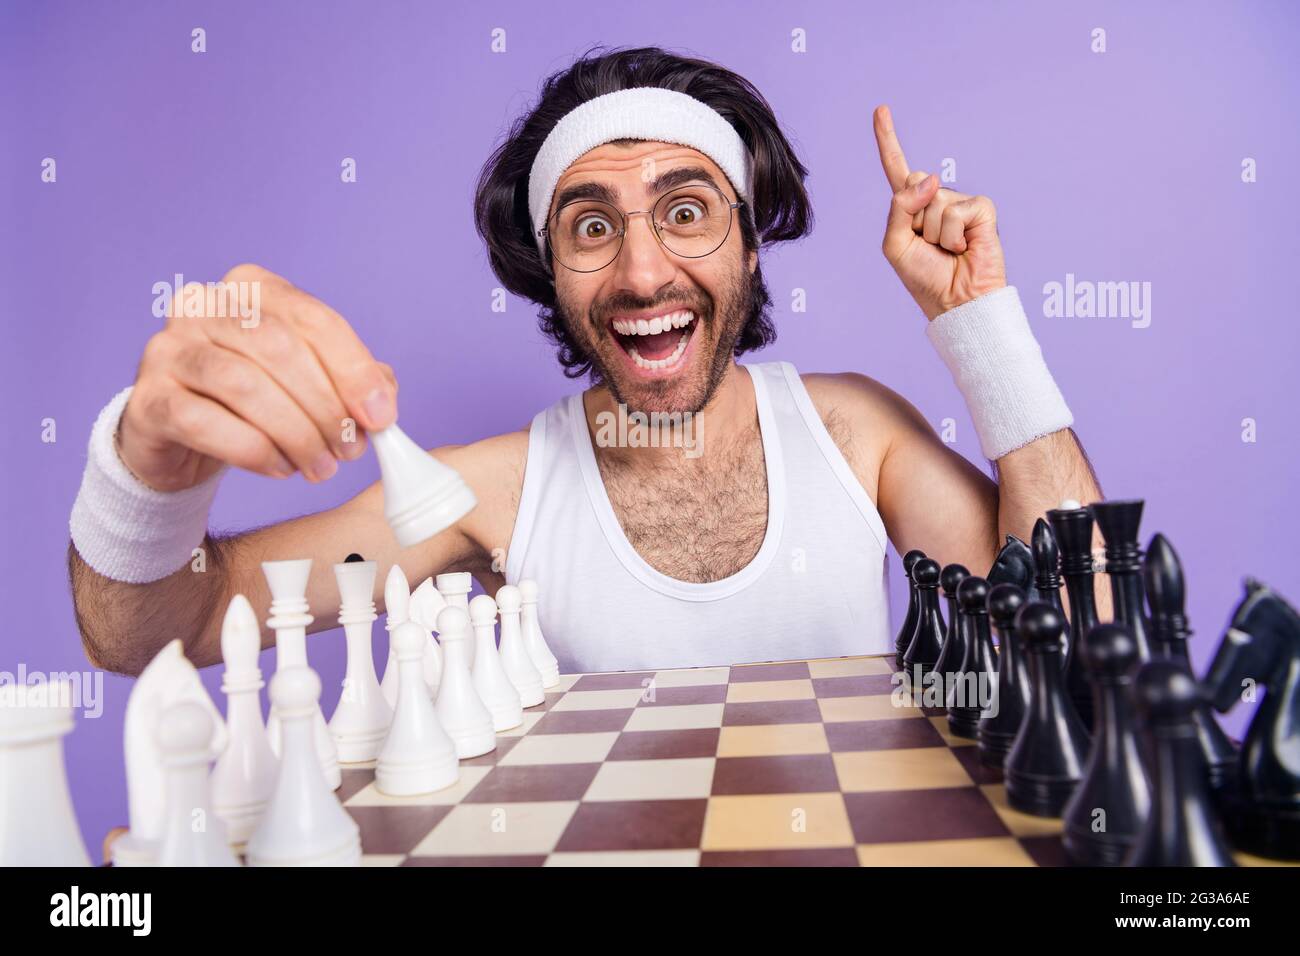 Photo de brunette optimiste gars jouer échecs porter des lunettes blanc singlet hairband isolé sur fond de couleur lilas Banque D'Images